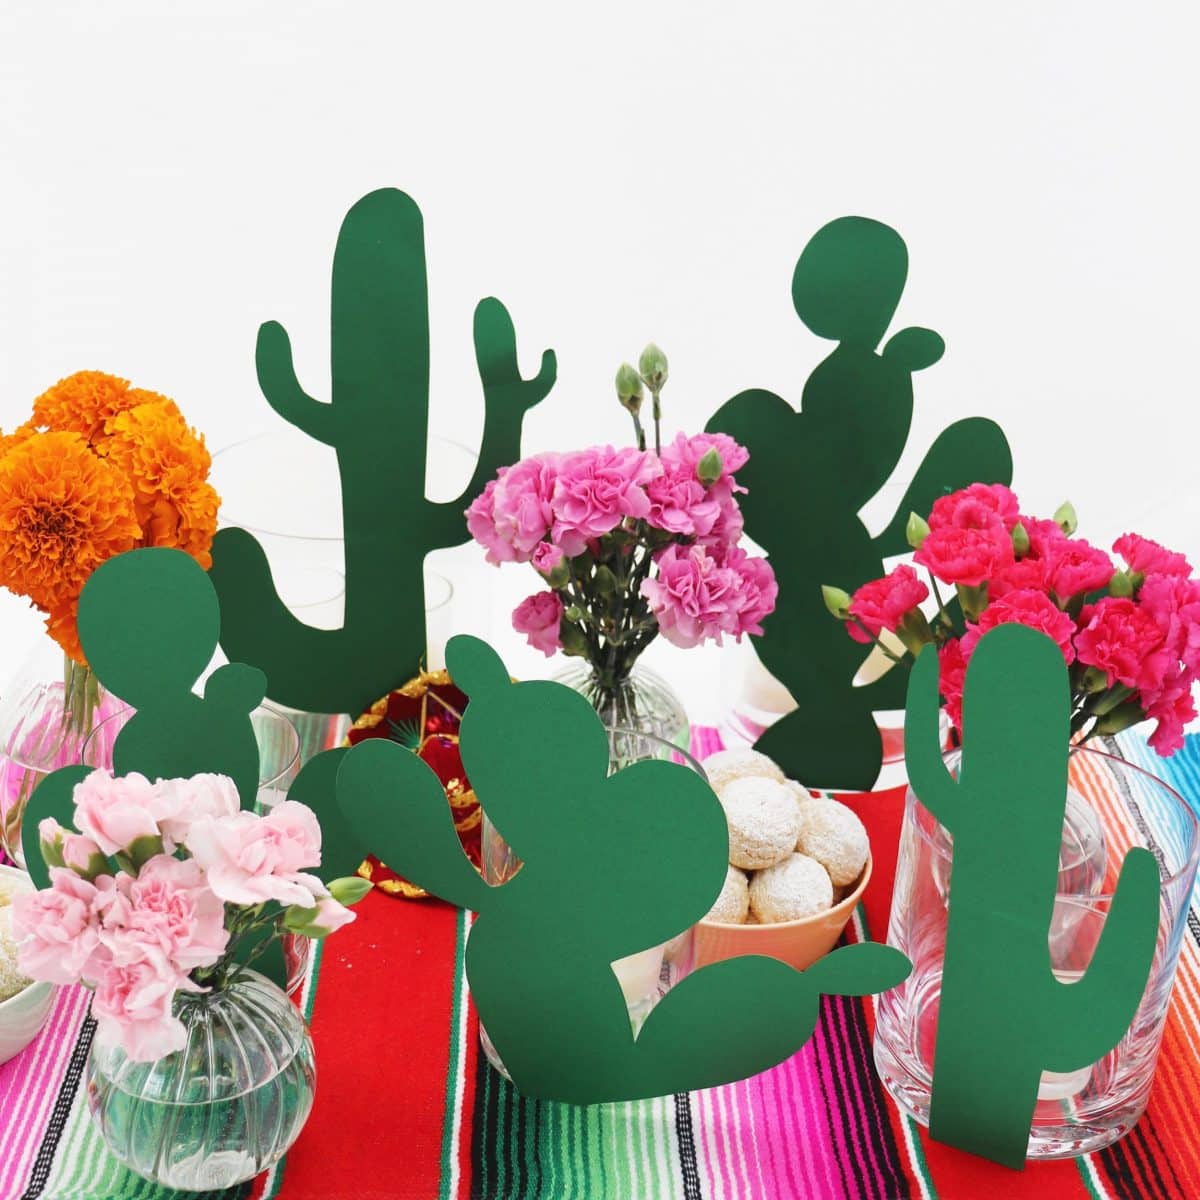 Darcy Miller Designs, Darcy Miller, Celebrate Everything, Fiesta, Crafts, Cacti, Centerpiece